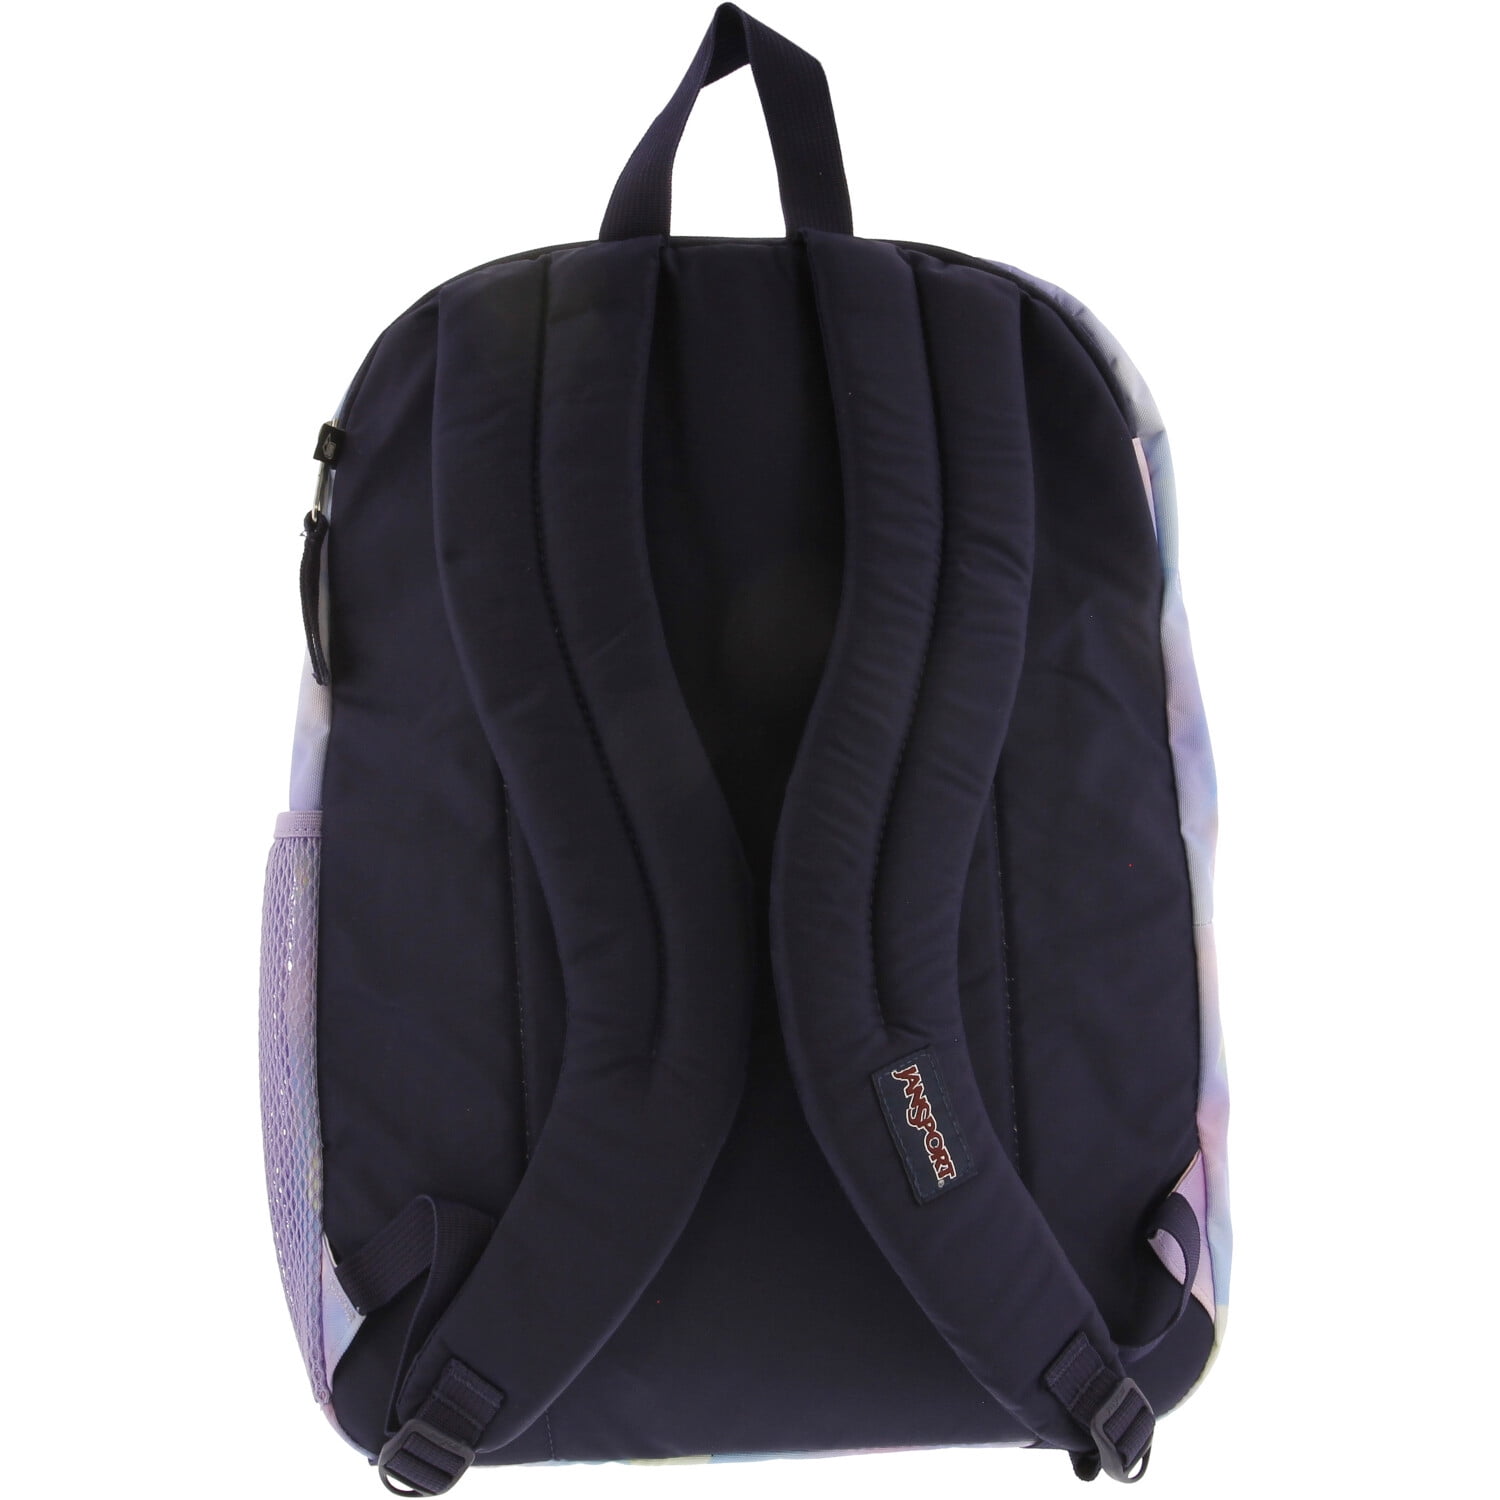 Backpack - Black Big Student Laptop 15-inch School JanSport